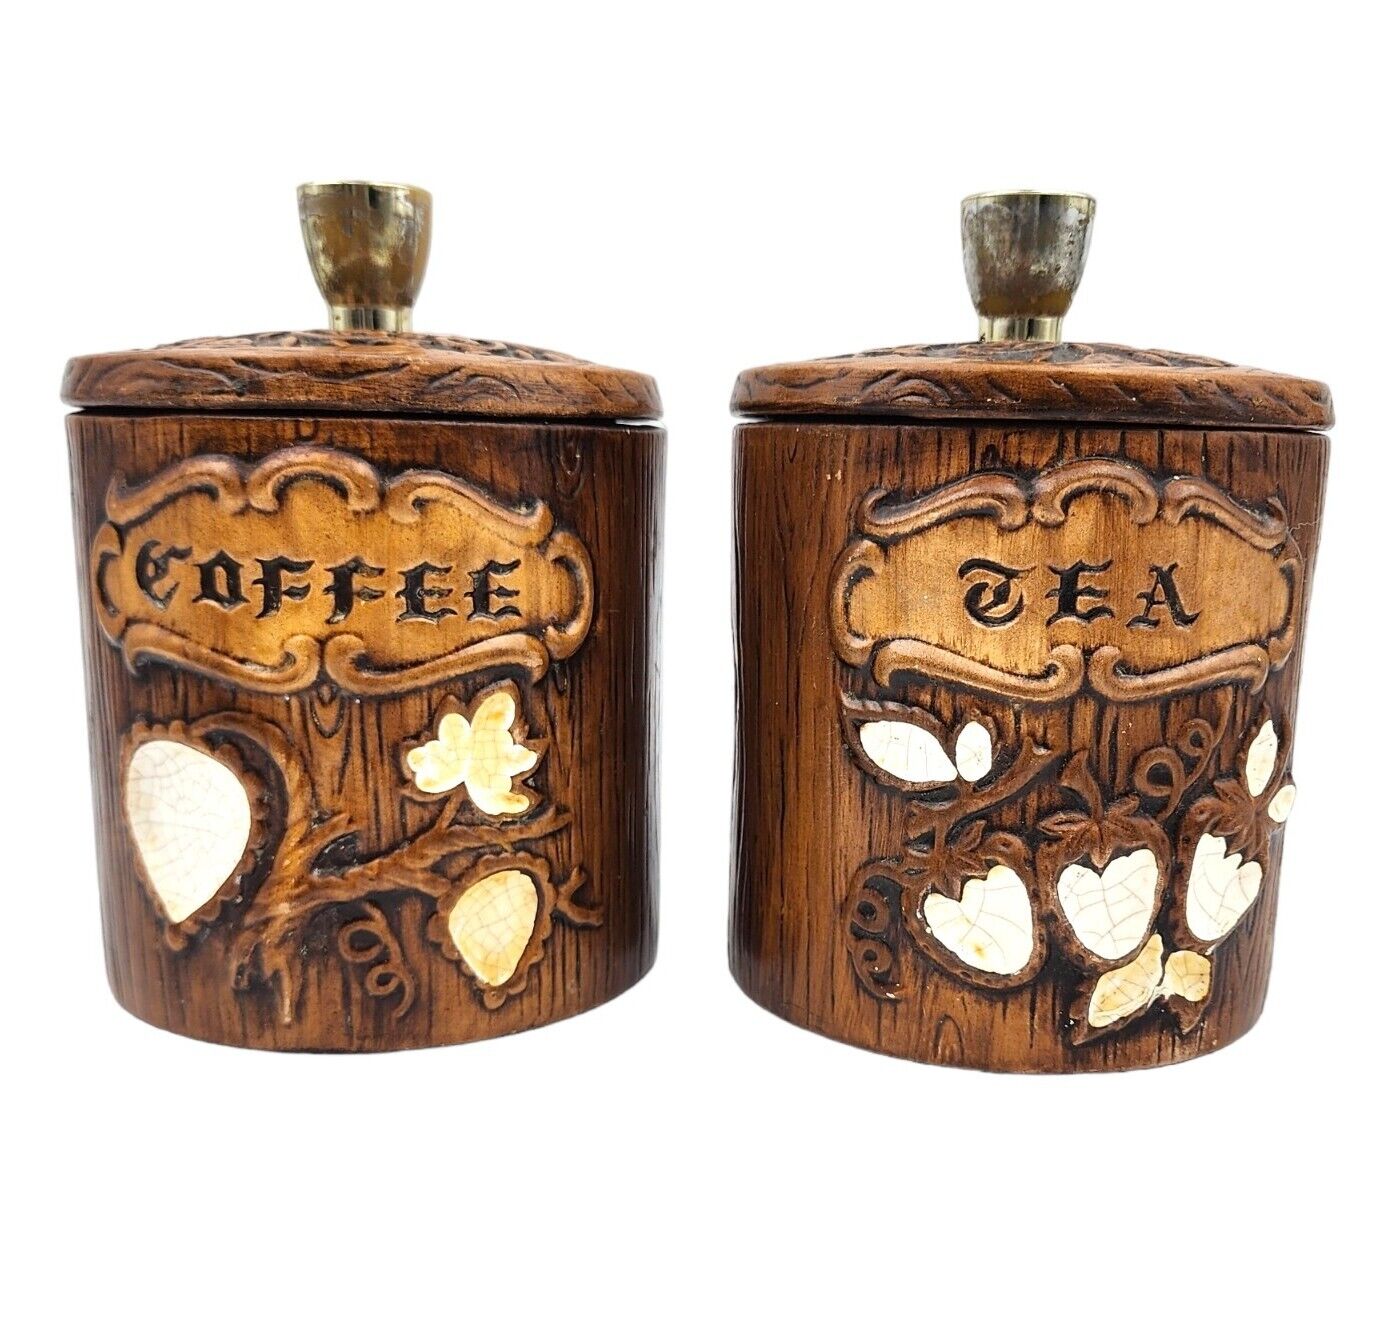 Vintage 1960s Treasure Craft Canister Set Coffee & Tea Fruit Woodgrain Set Of 2 